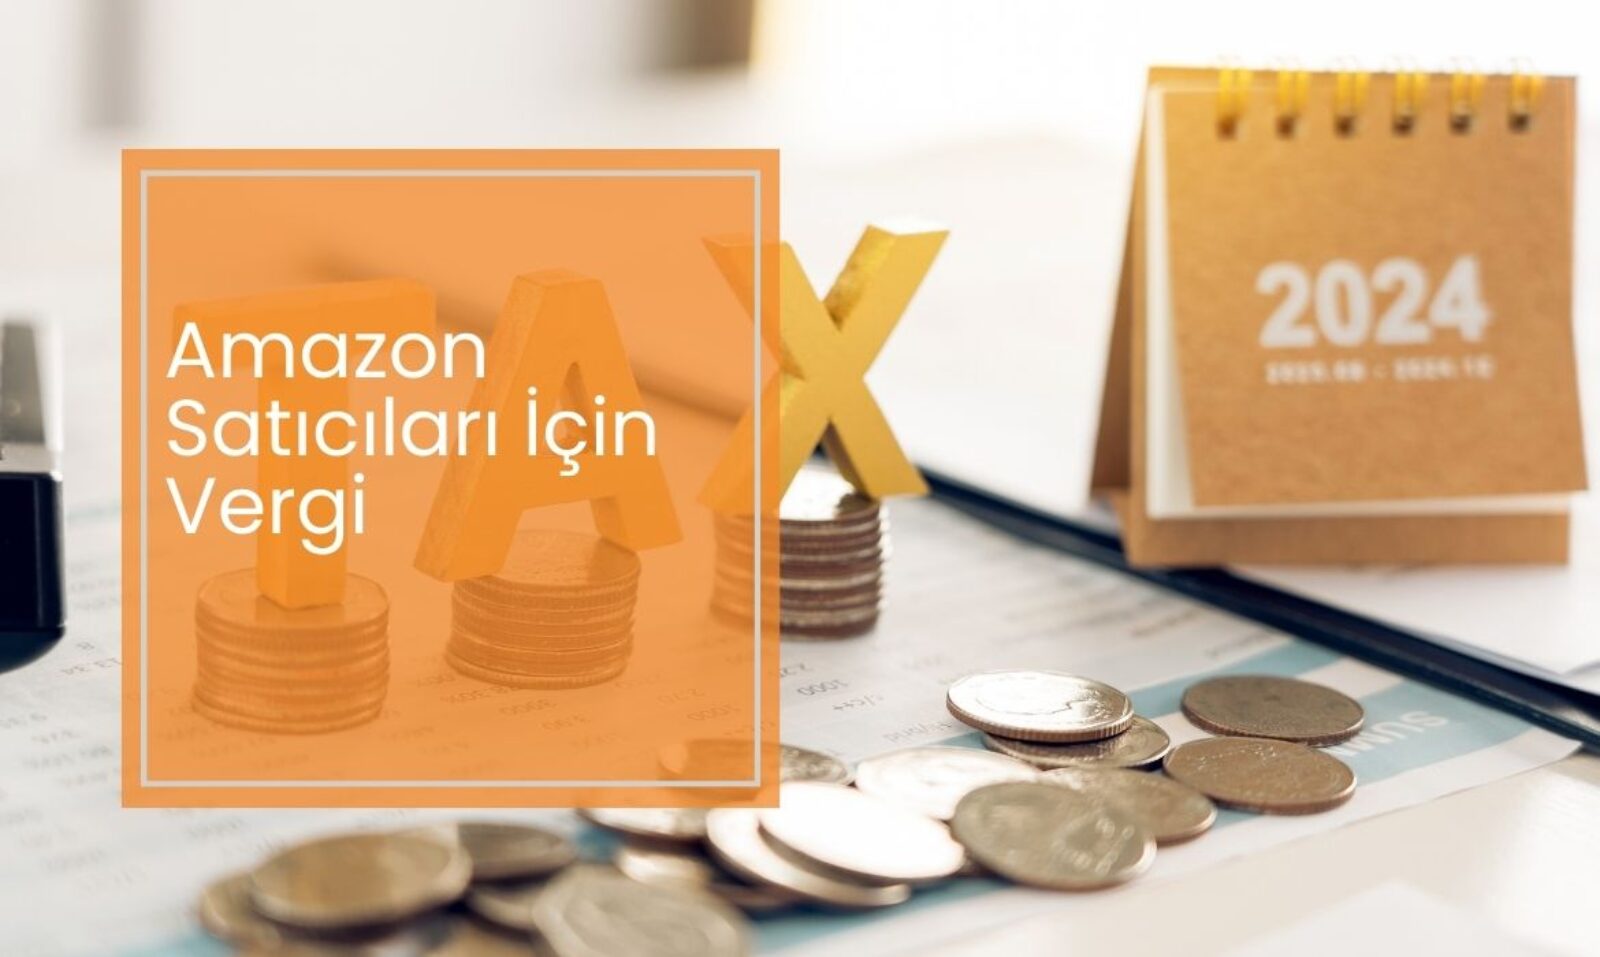 Amazon Satıcıları İçin Vergi